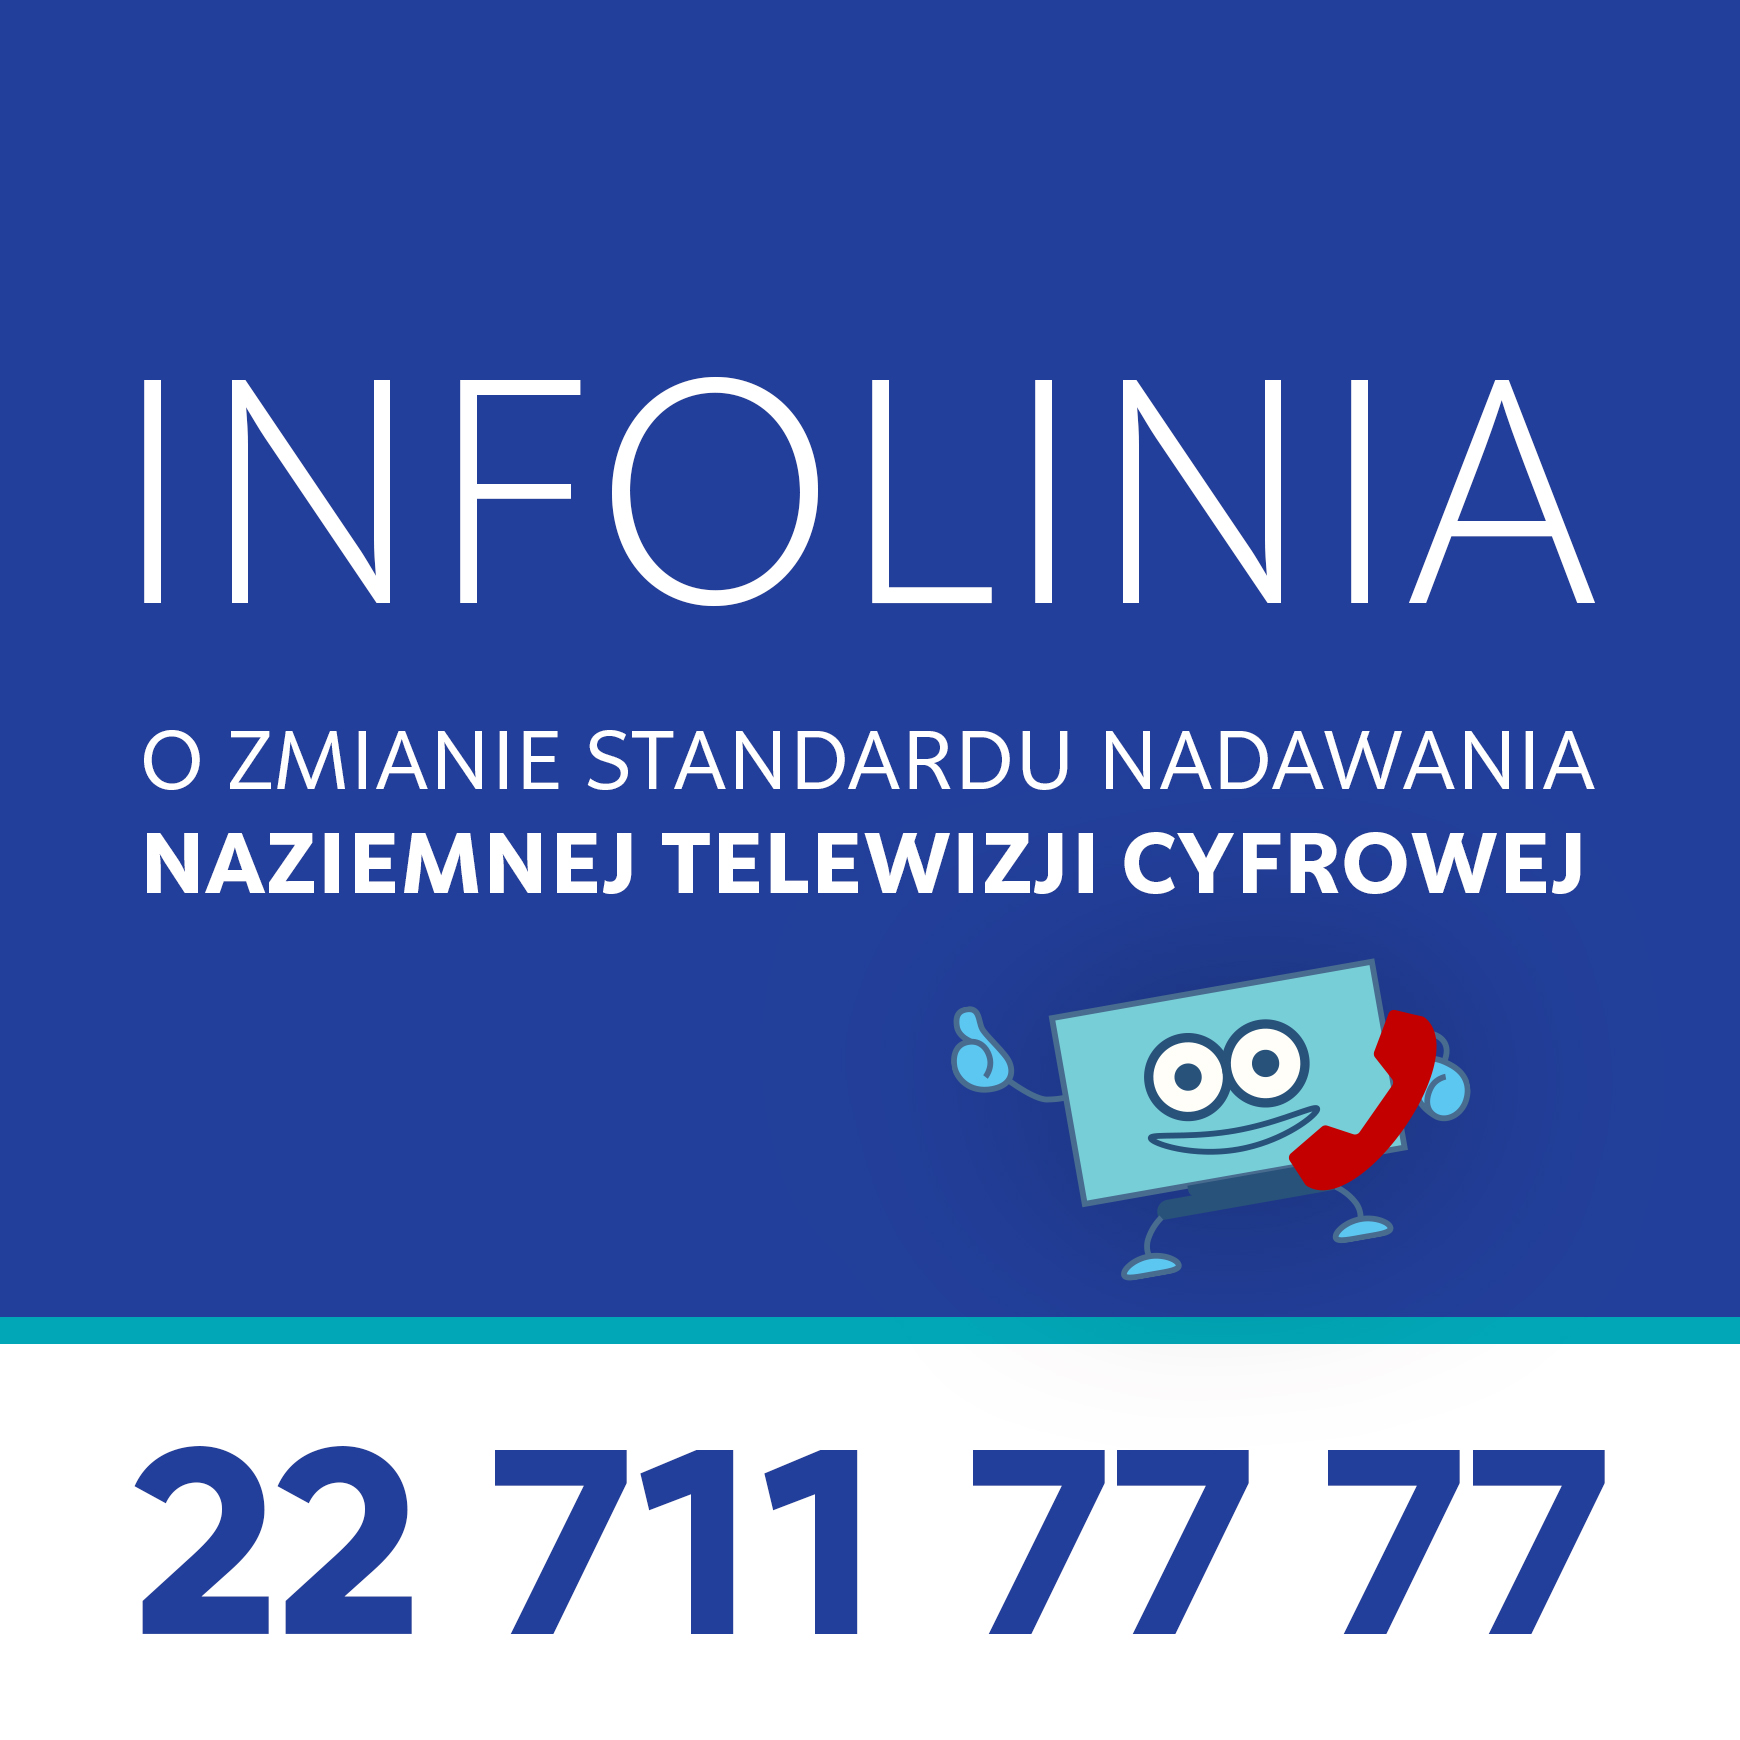 Telewizja Polska uruchomiła INFOLINIĘ – kolejne narzędzie wsparcia dla widzów przed zmianą standardu nadawania